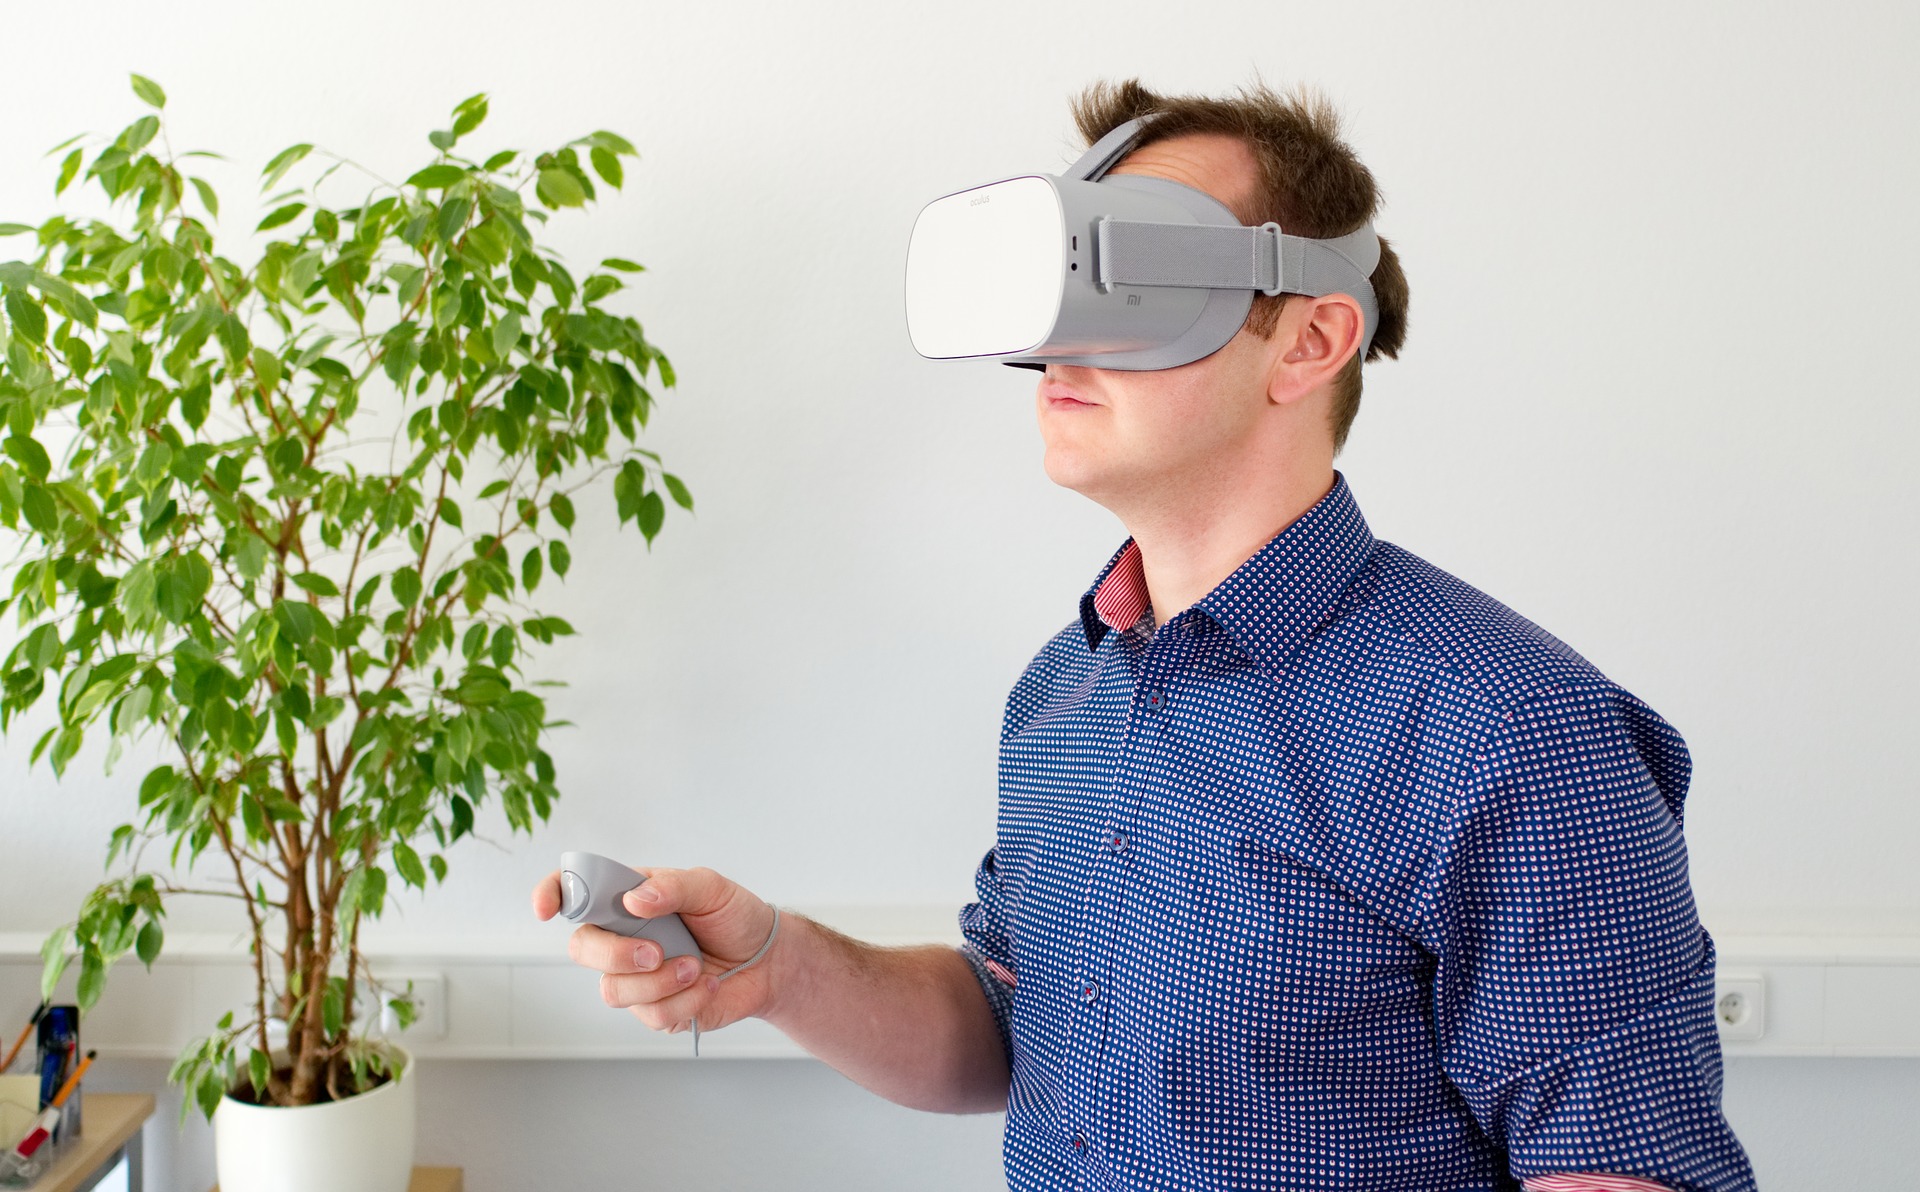 Zo kan Virtual Reality ingezet worden